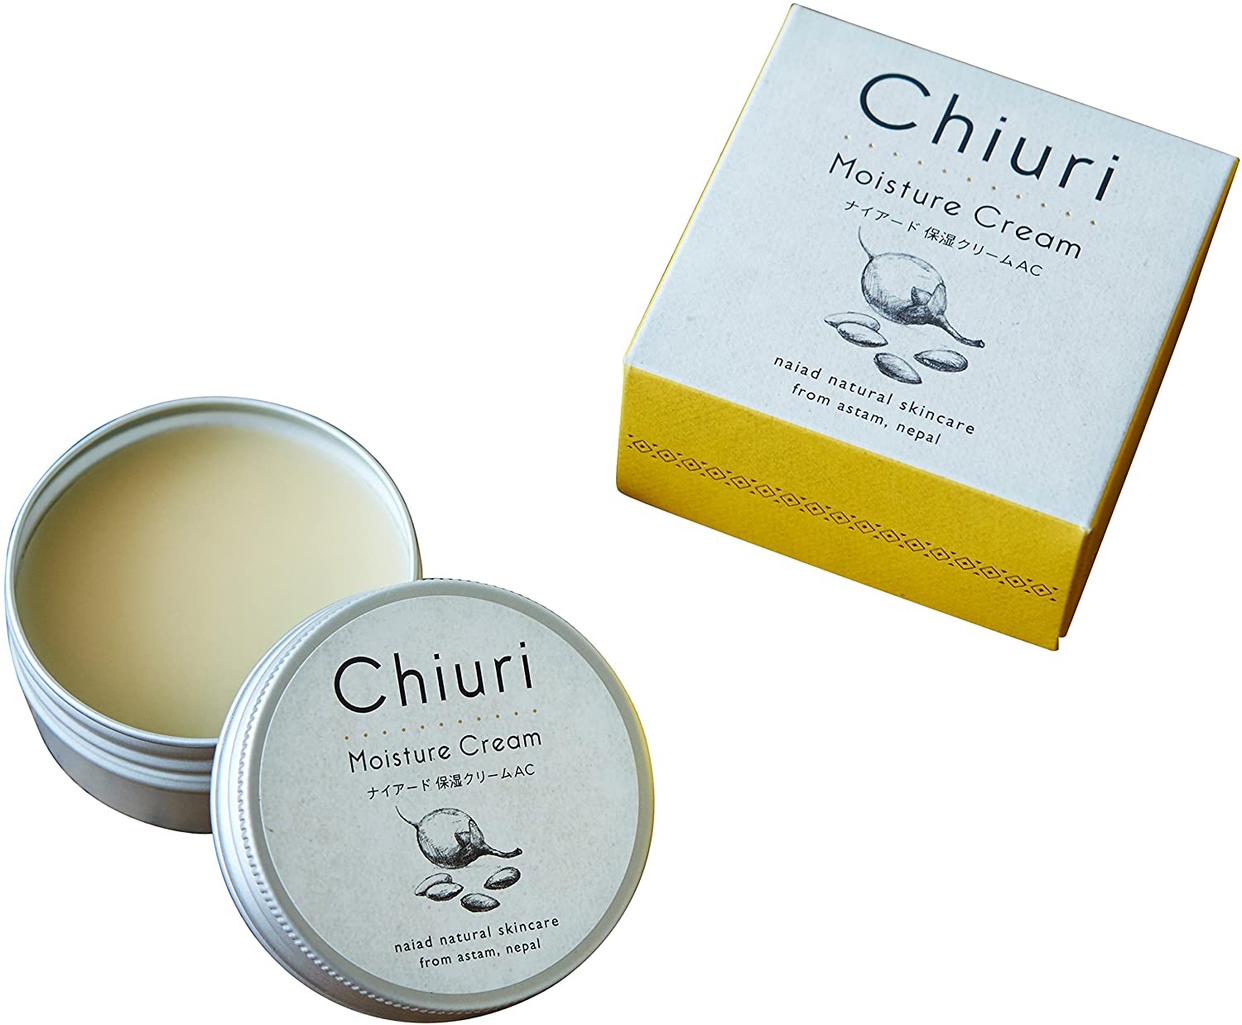 Chiuri(チウリ) モイスチャークリームの商品画像2 